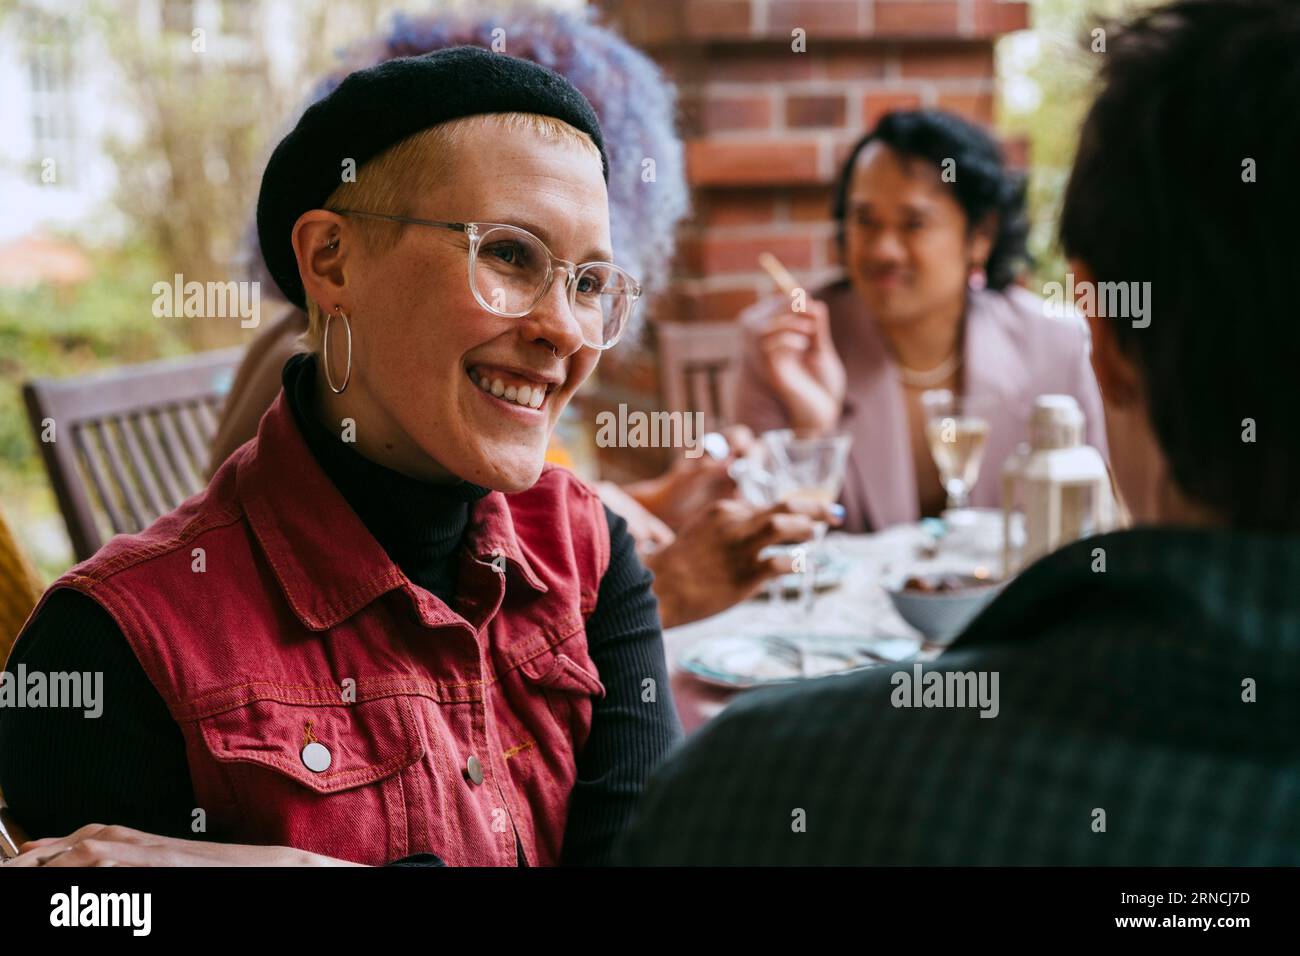 Lächelnde schwule Frau, die mit einem Freund während der Party im Hinterhof spricht Stockfoto